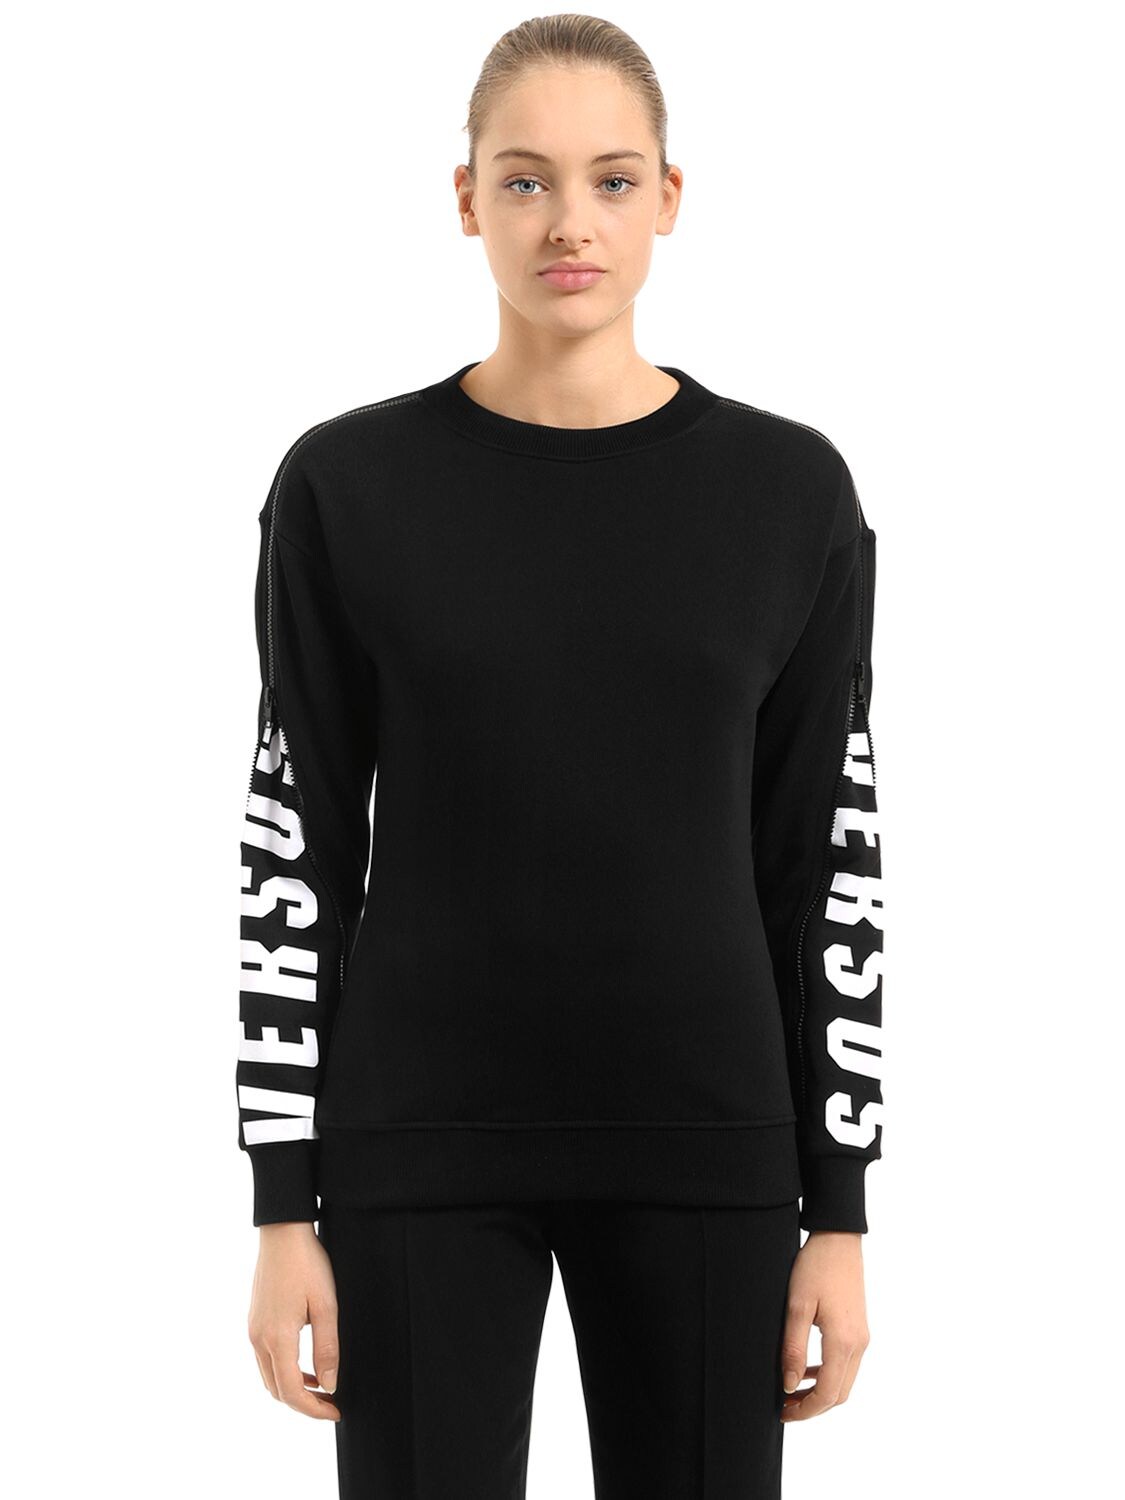 Versus Hidden Logo Printed Cotton Sweatshirt In Black